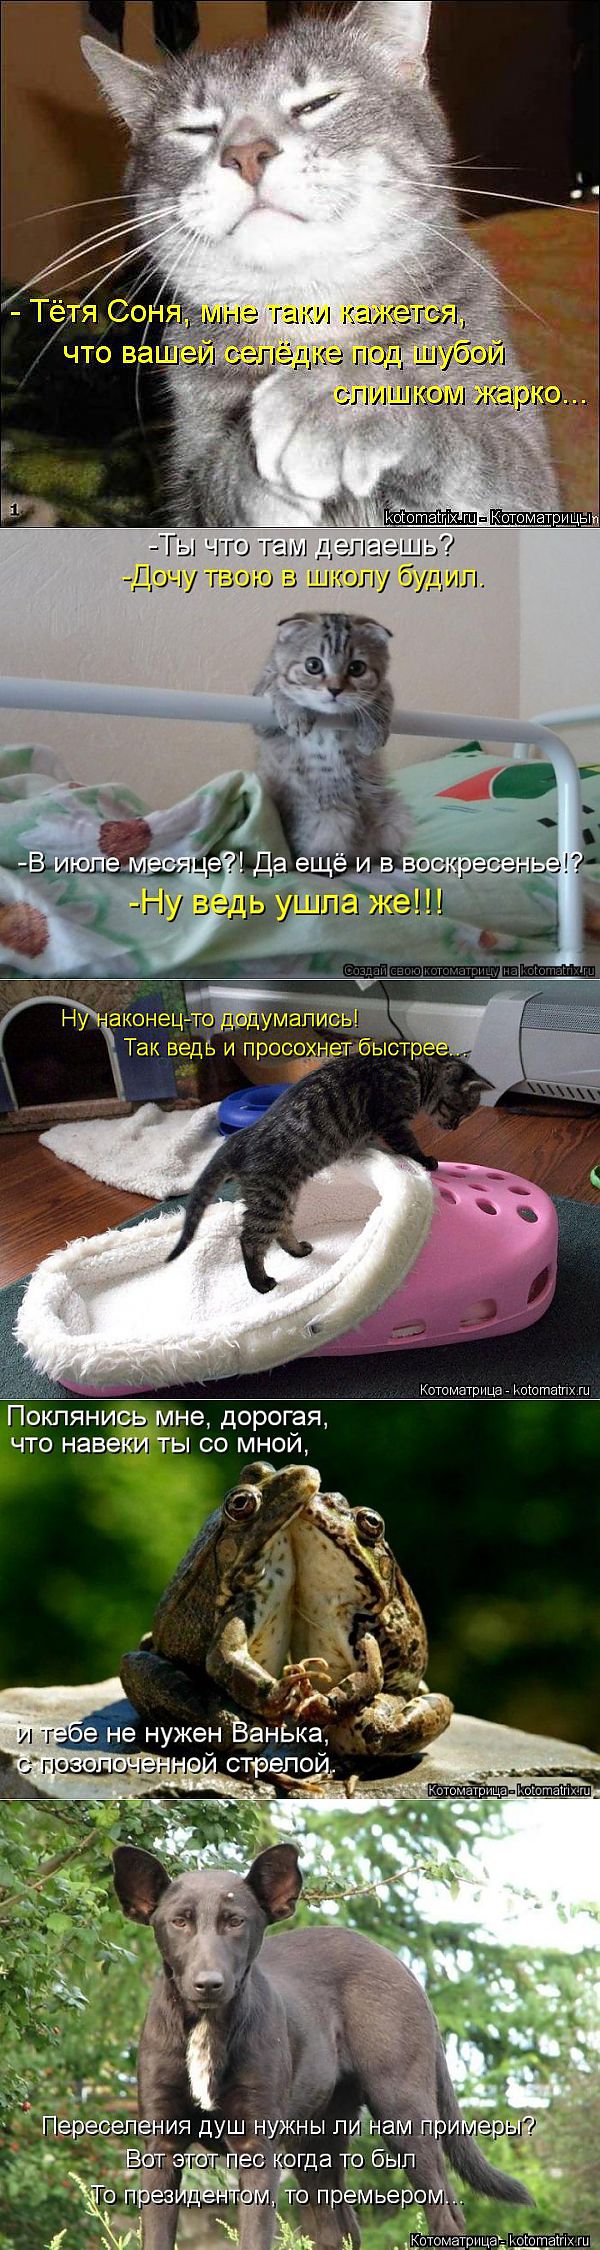 Новые смешные котоматрицы понедельника! | ЛЮБИМЫЕ ФОТО